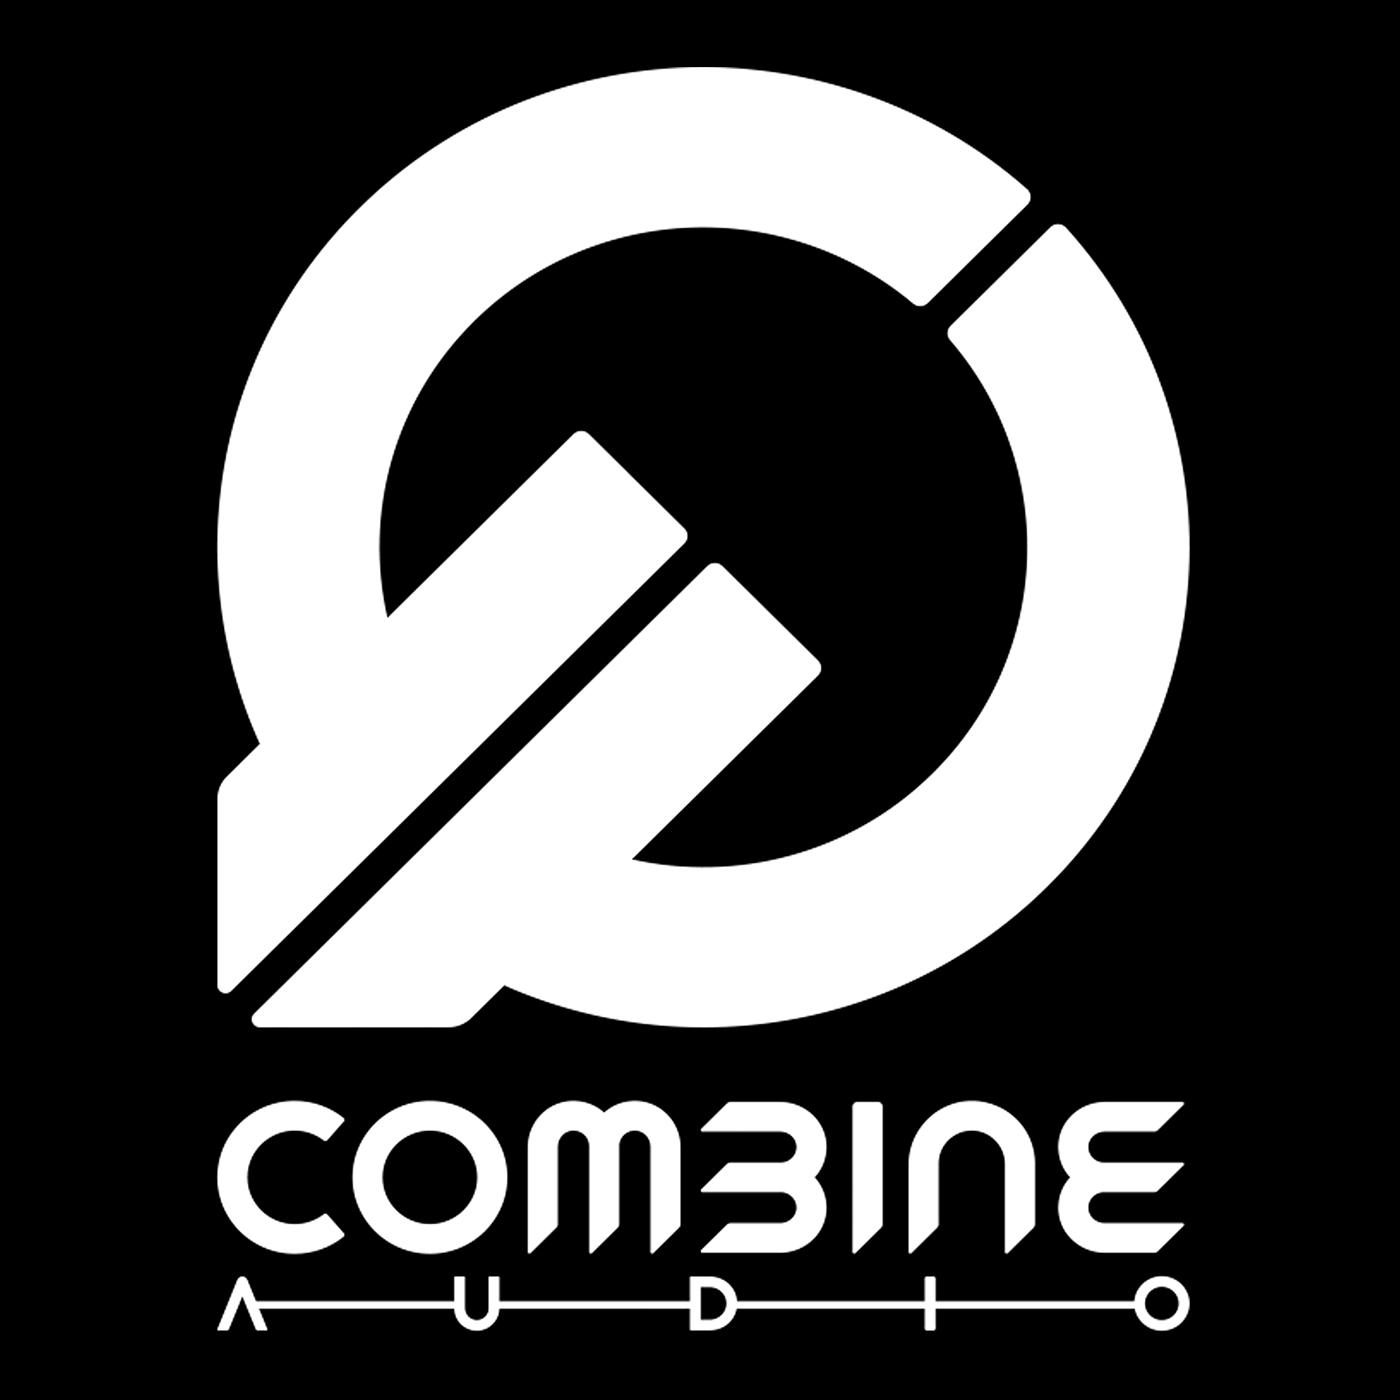 Combine Audio Logo